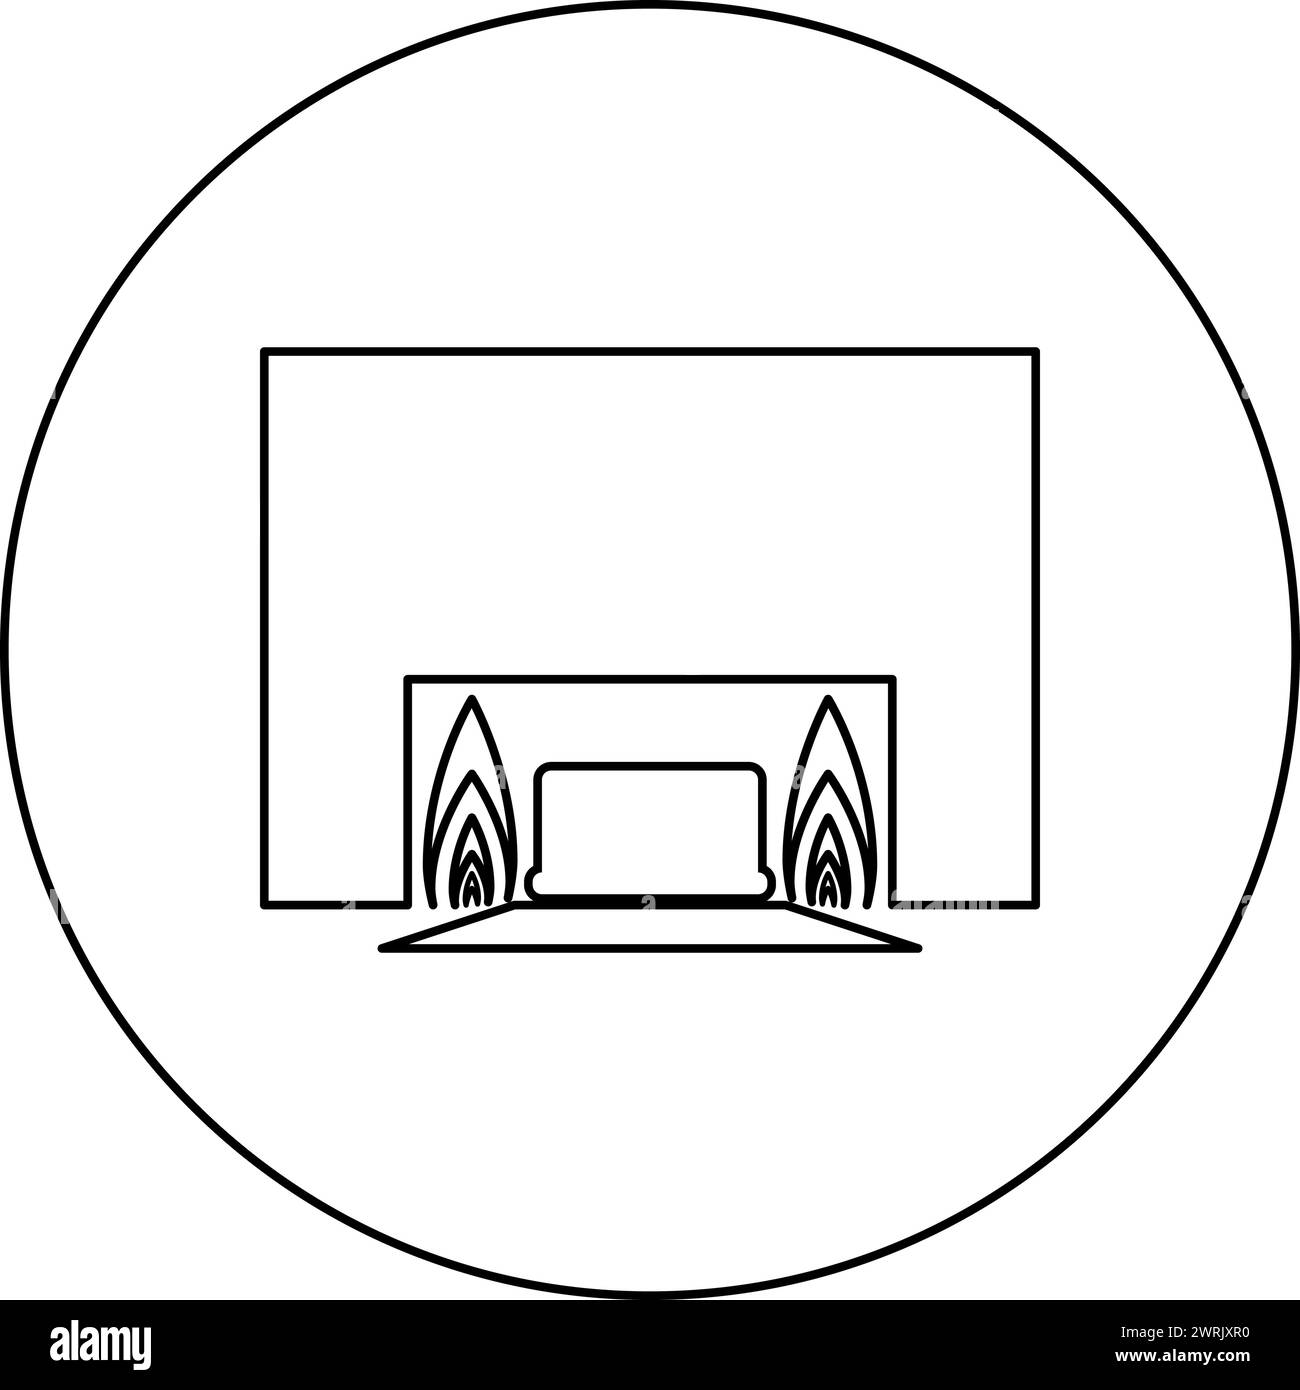 Processo di cremazione crematorio dell'icona dell'apparecchiatura crematoria cremativa in cerchio, colore nero, illustrazione vettoriale, contorno immagine sottile Illustrazione Vettoriale